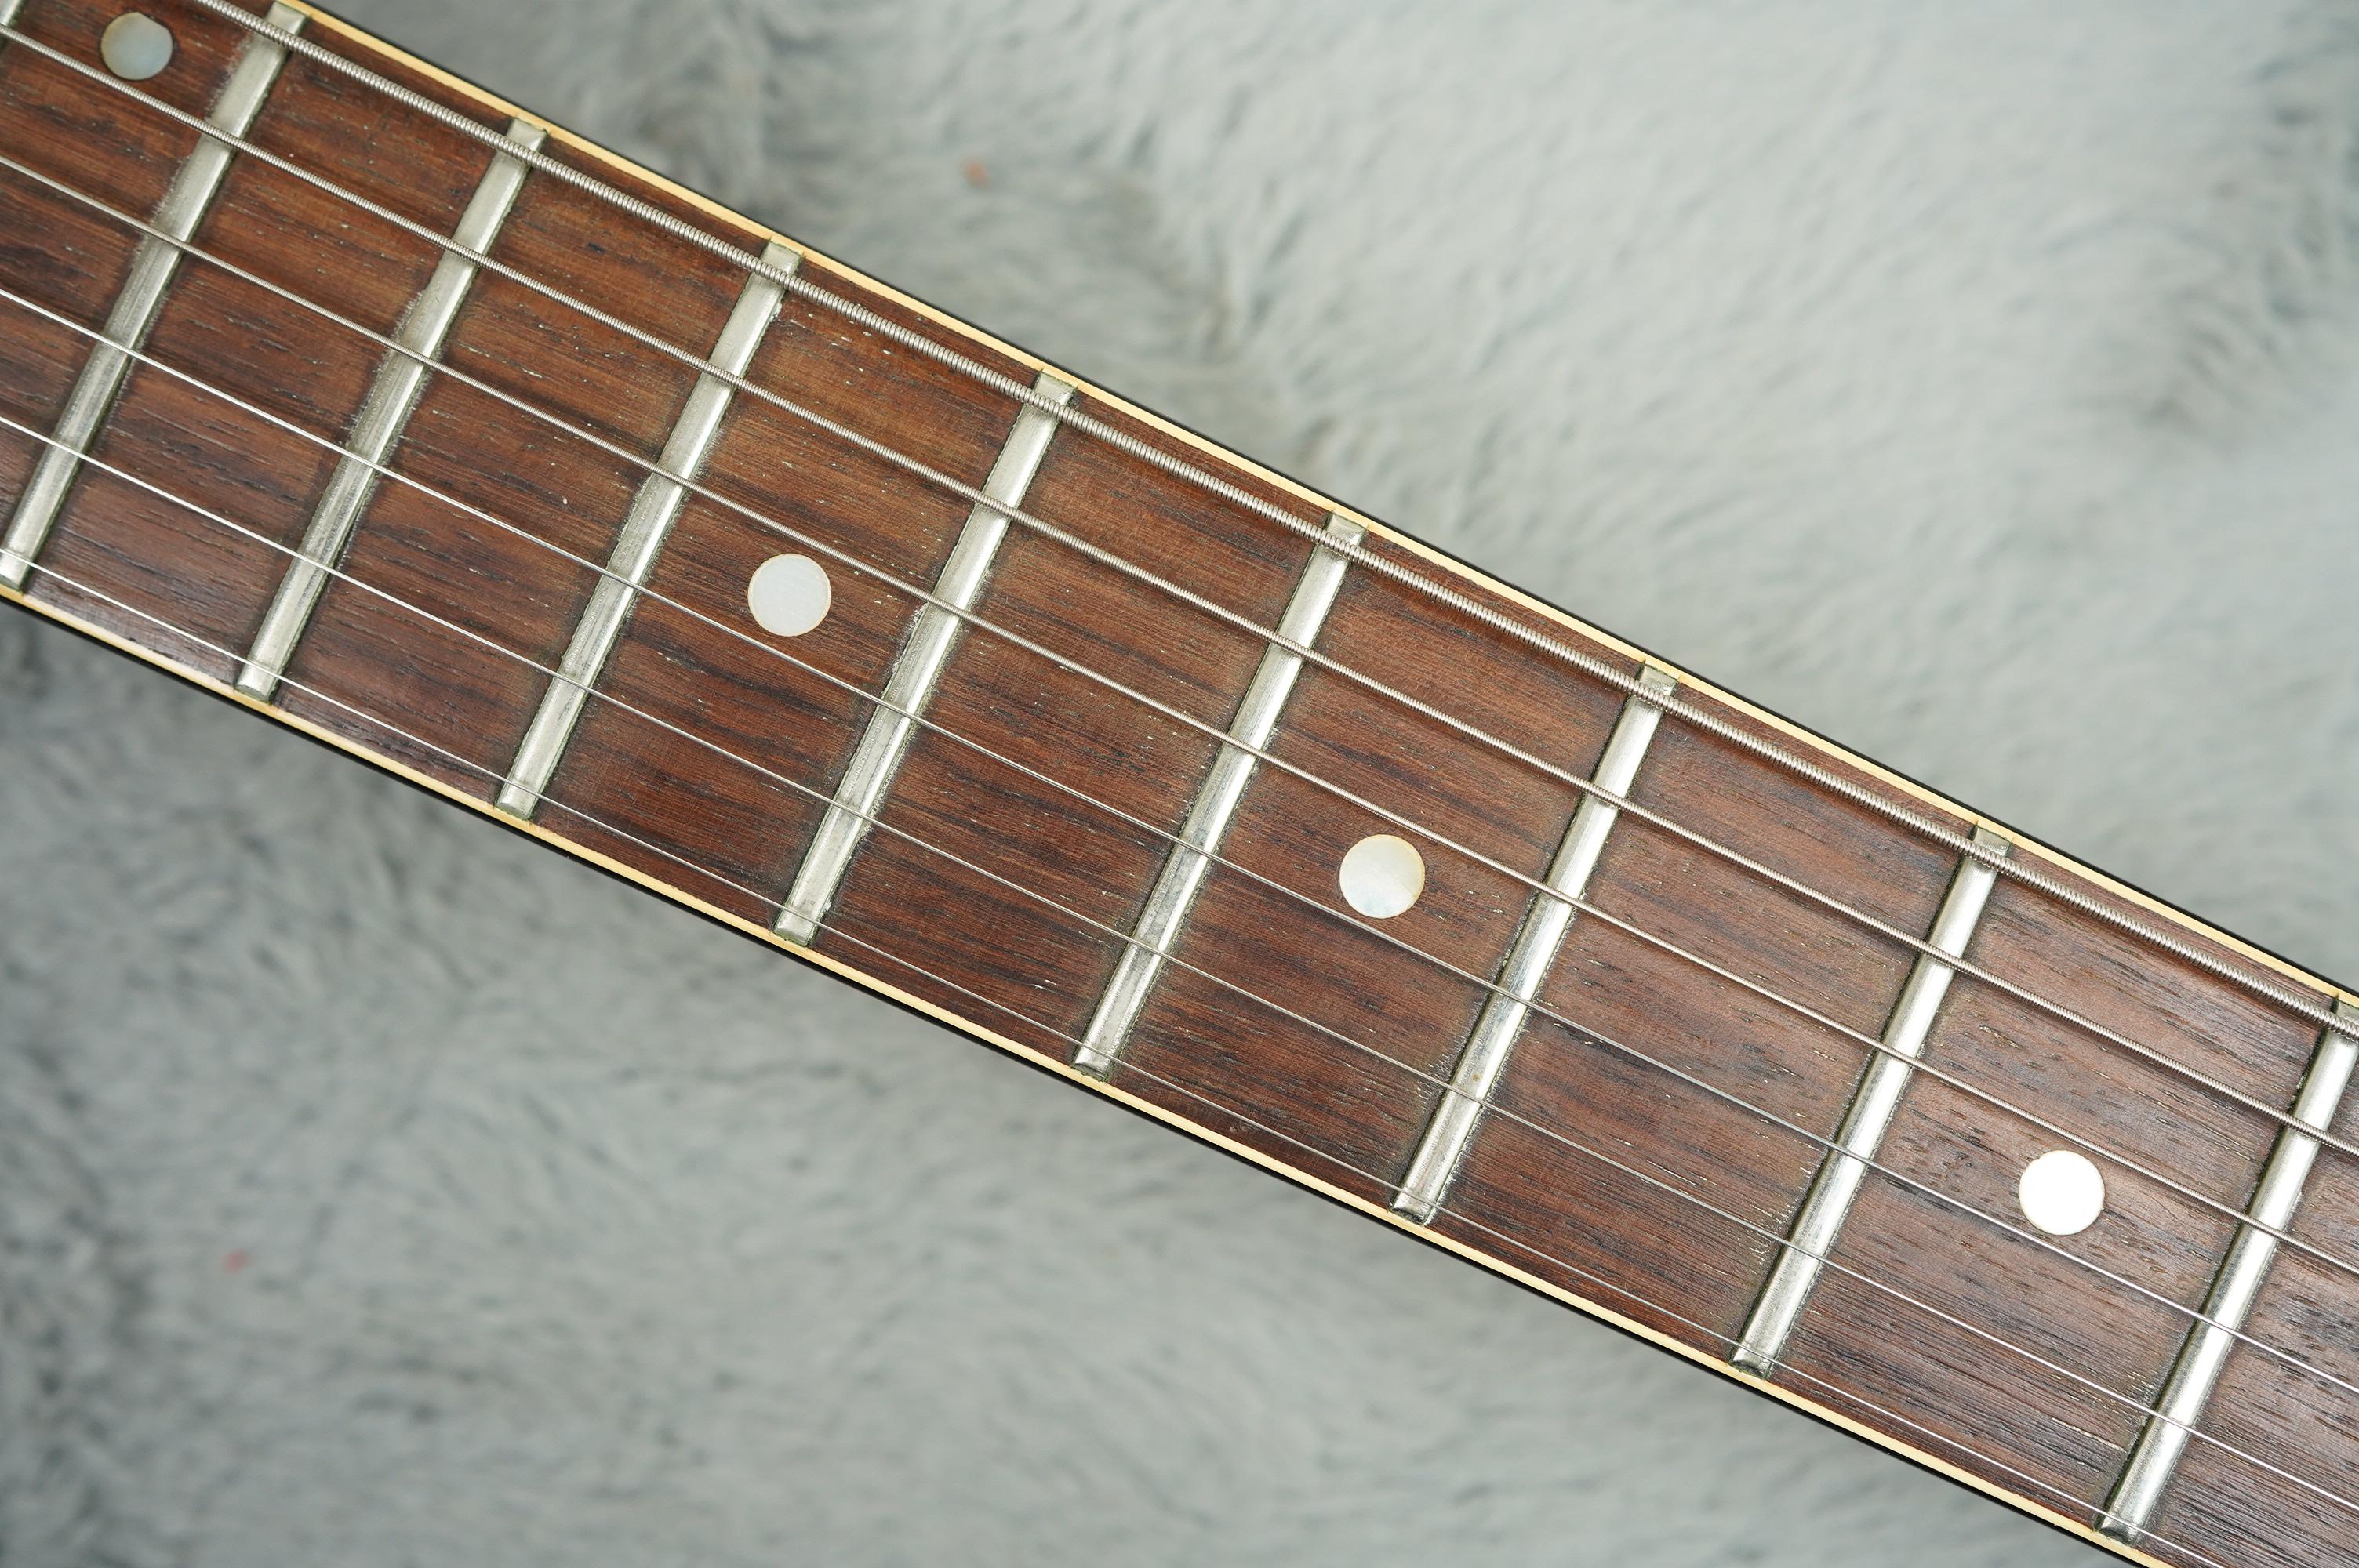 1972 Gibson SG Pro